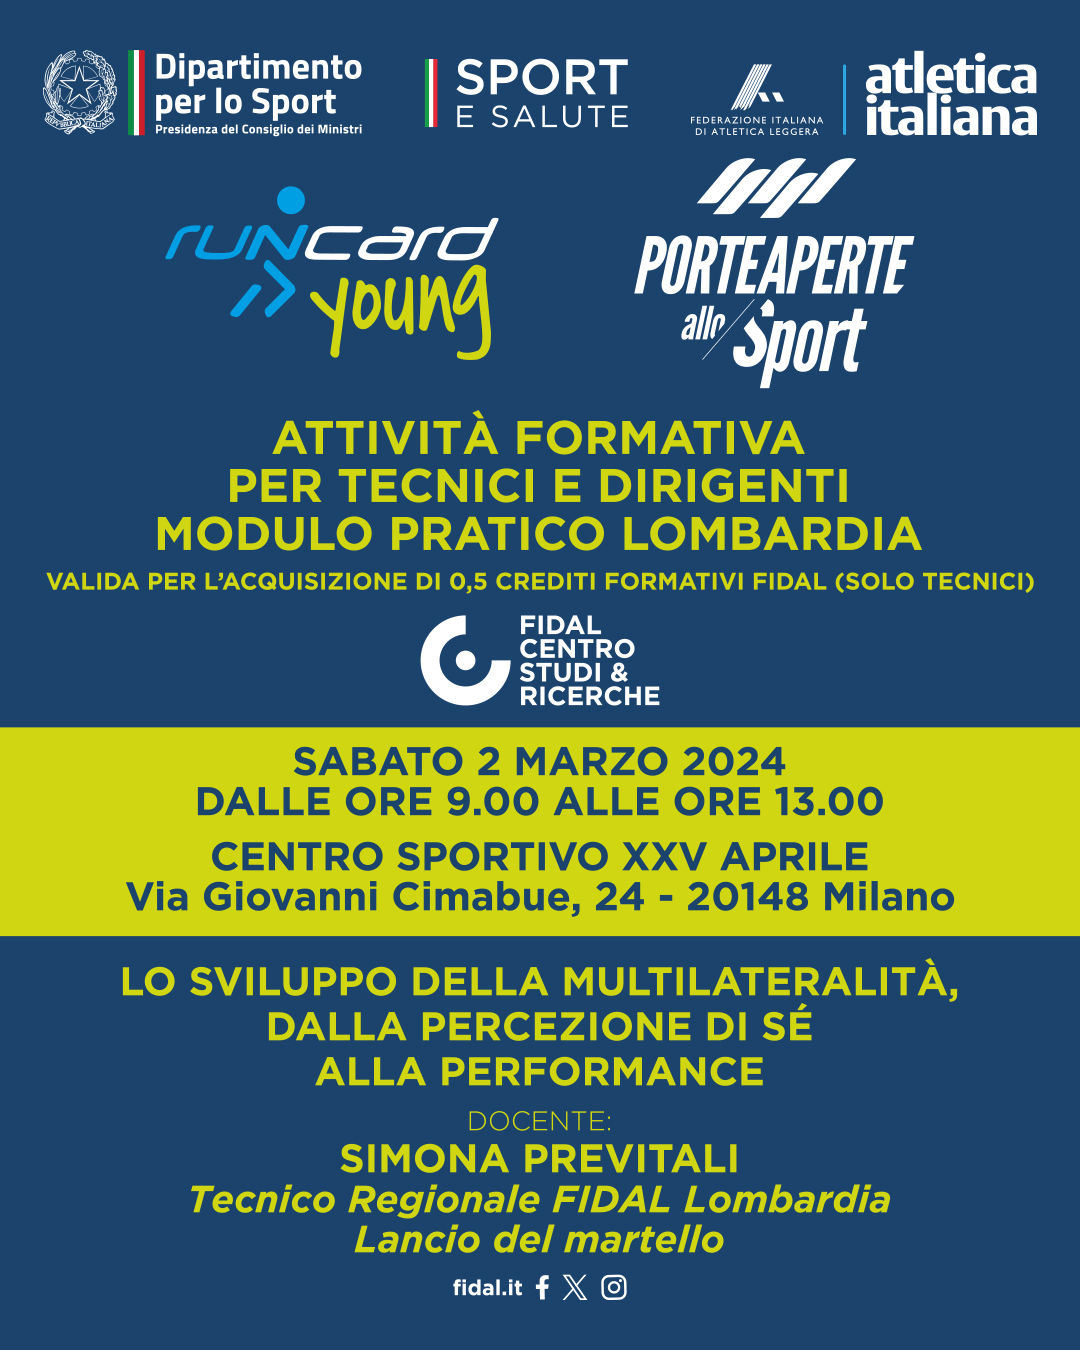 1080x1350 px Post Runcard Young Porte aperte allo Sport Attivita formativa tecnici dirigenti Modulo pratico LOMBARDIA 2 marzo 2024 1